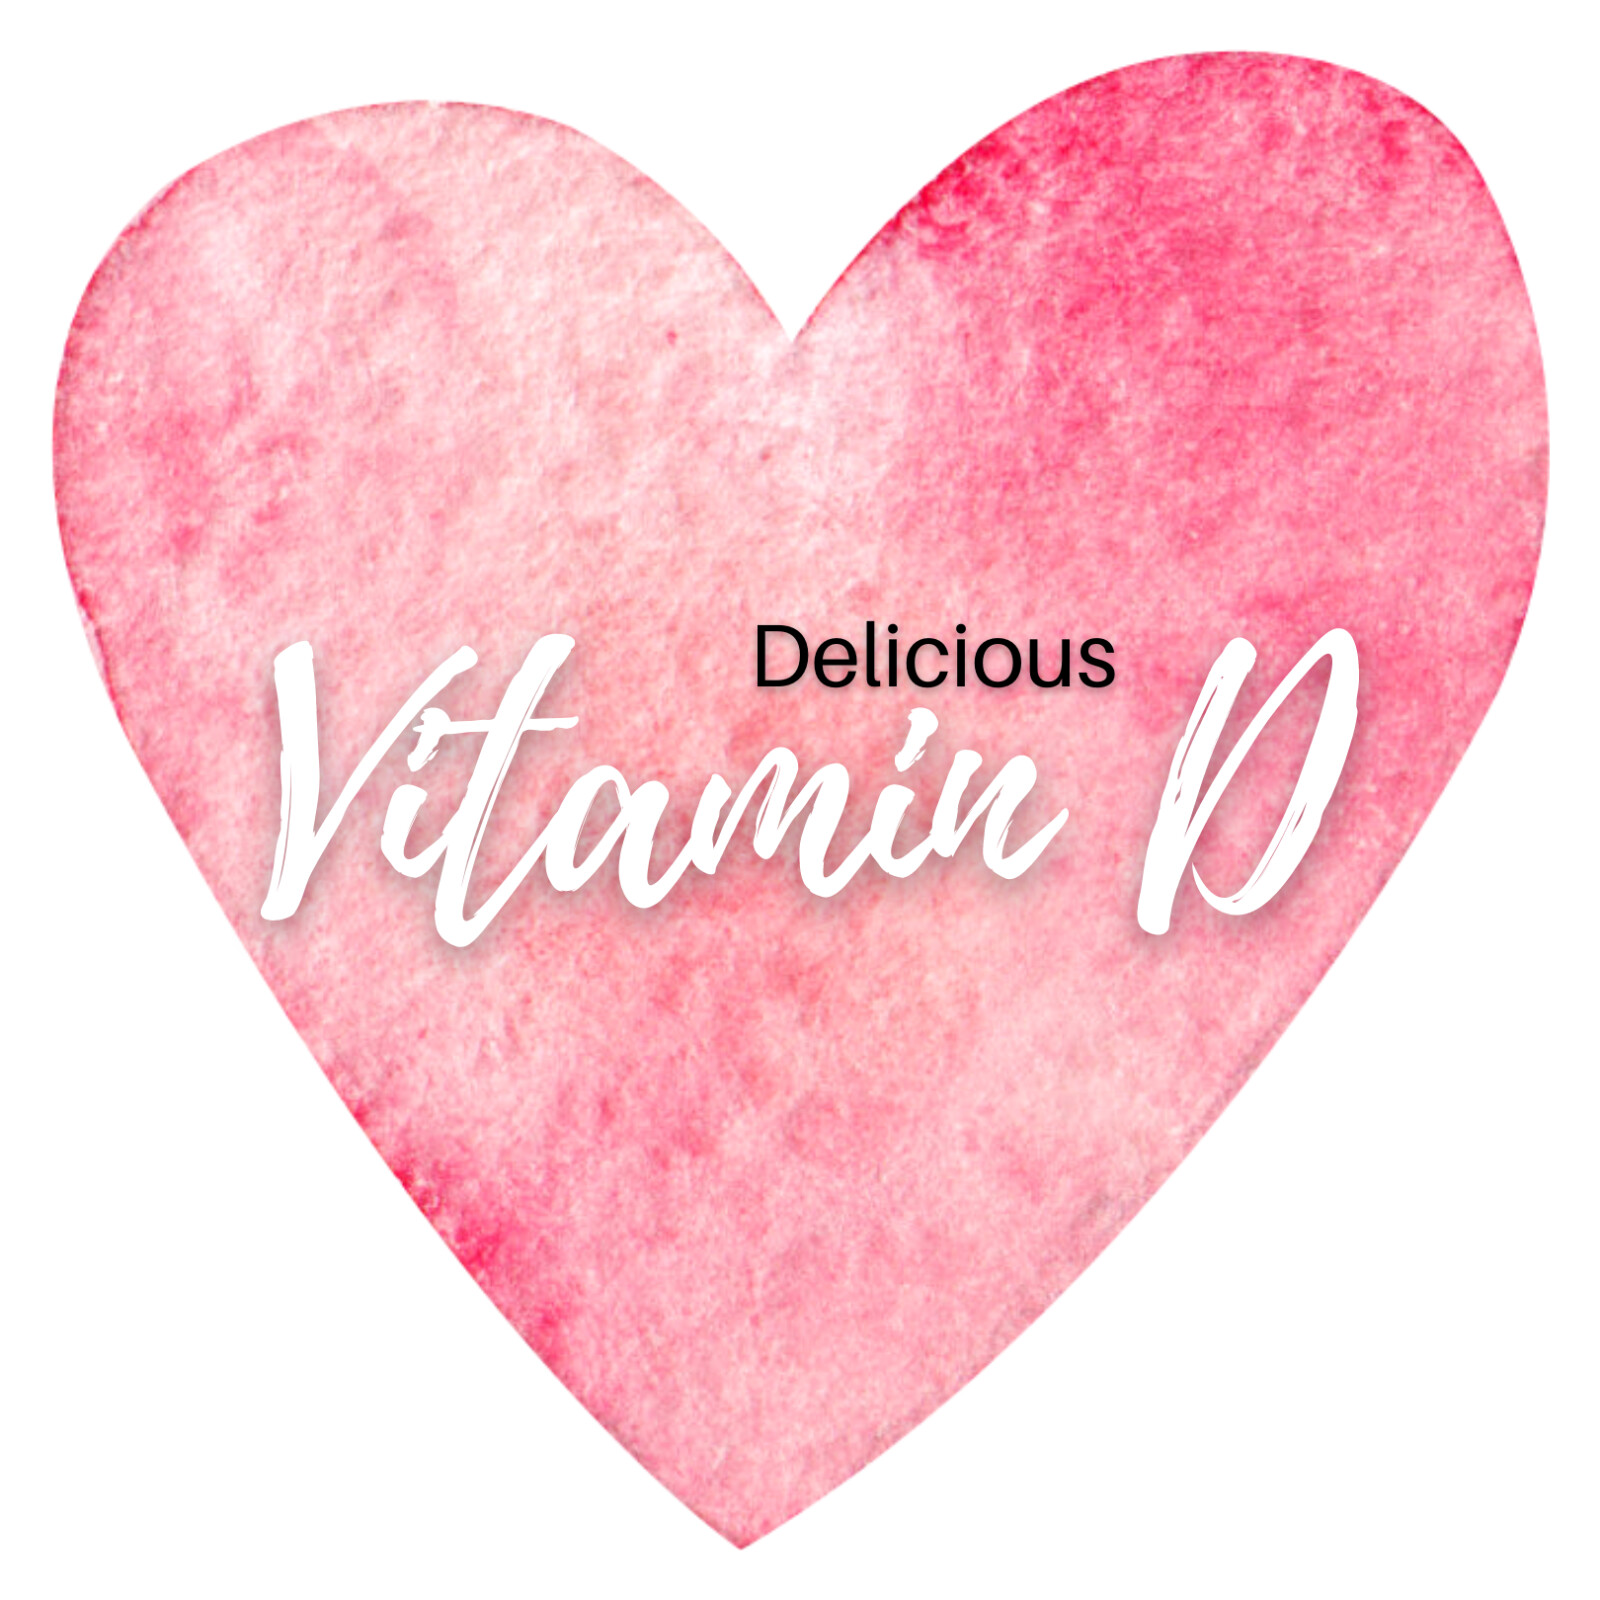 Delicious Vitamin D